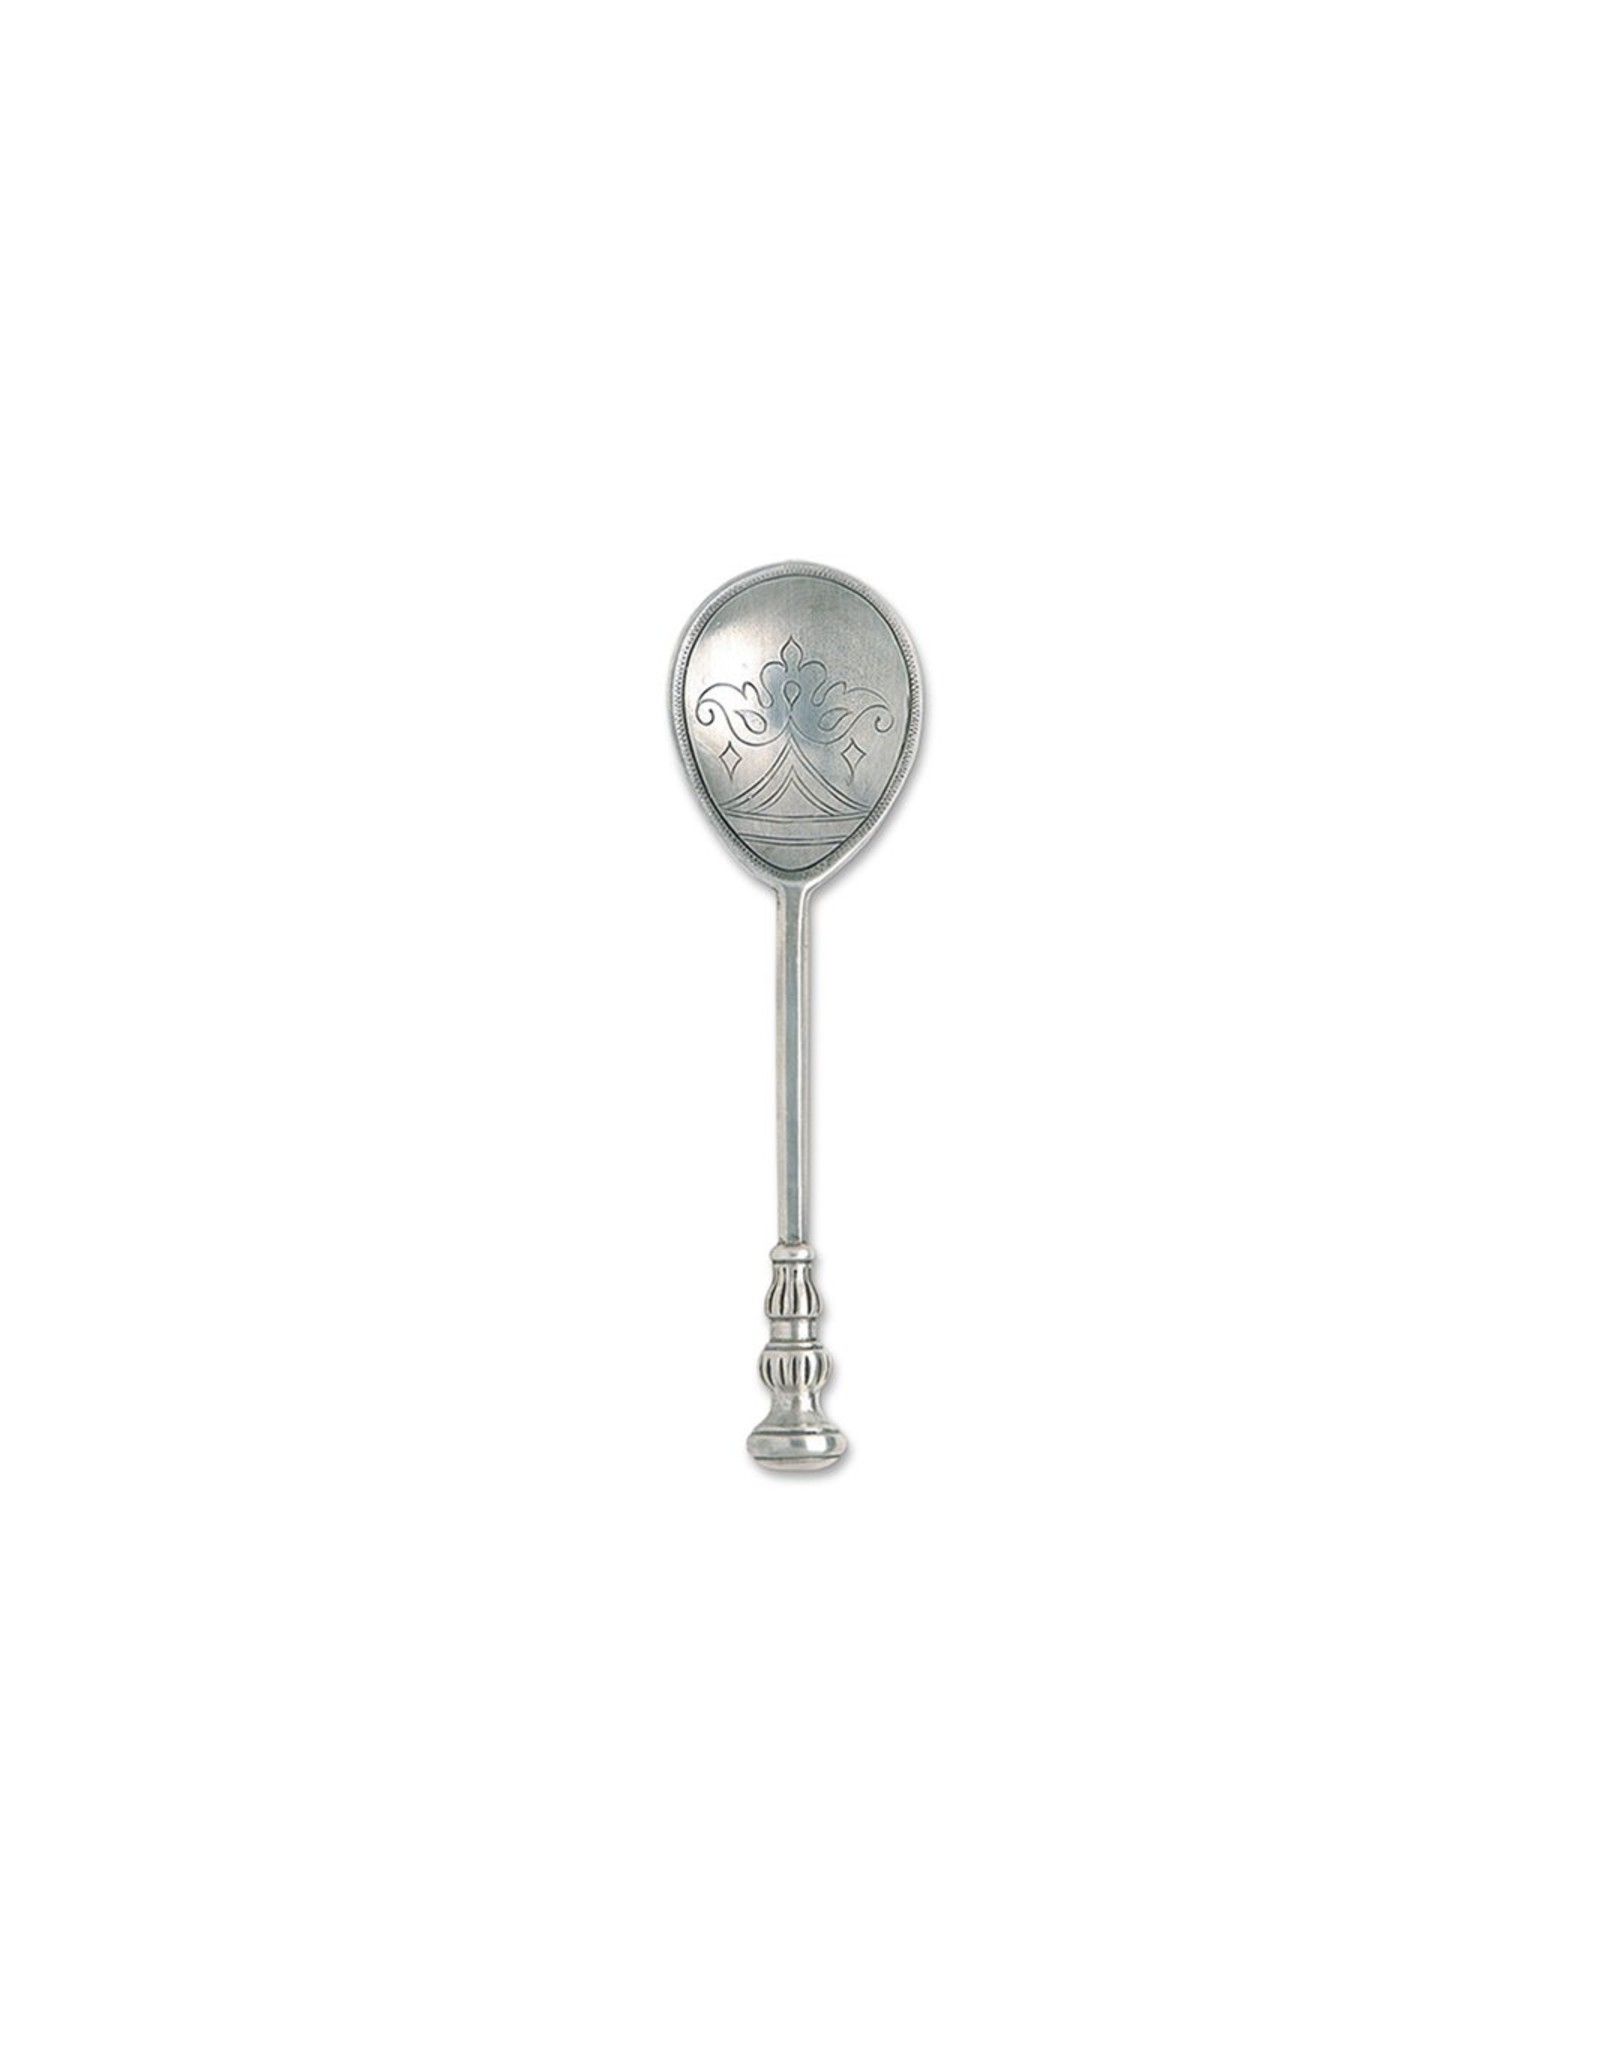 Cavalier Spoon, A2995.0